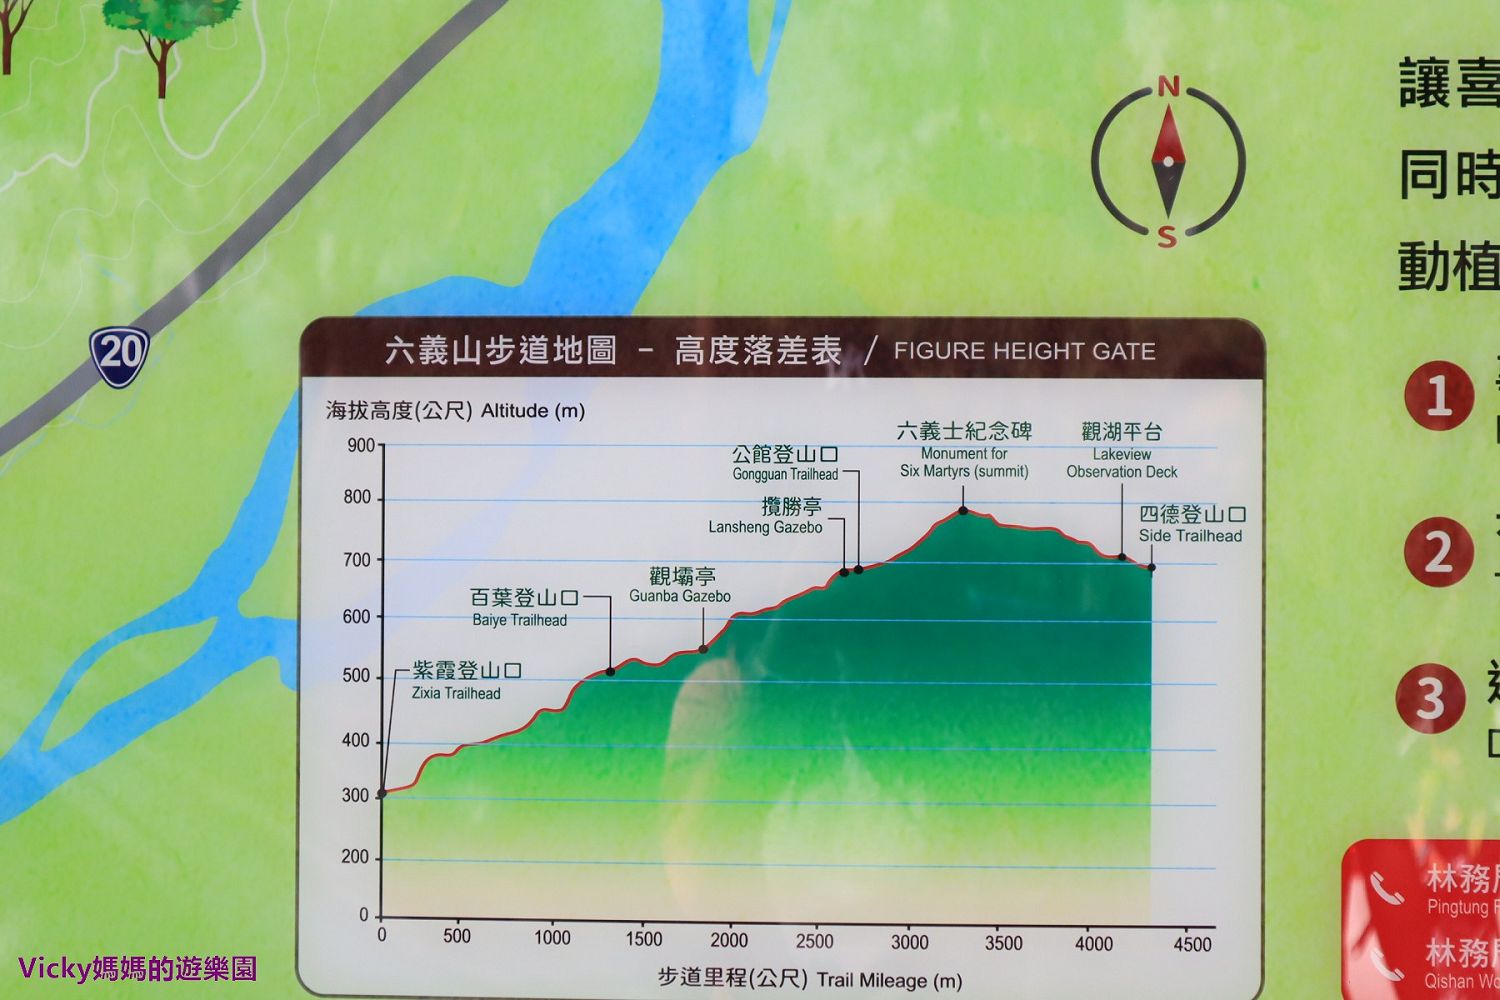 高雄親子登山健行步道︱甲仙六義山步道：不必登頂就可一覽南化水庫風光，來到這邊也可同時遊覽南化水庫喔